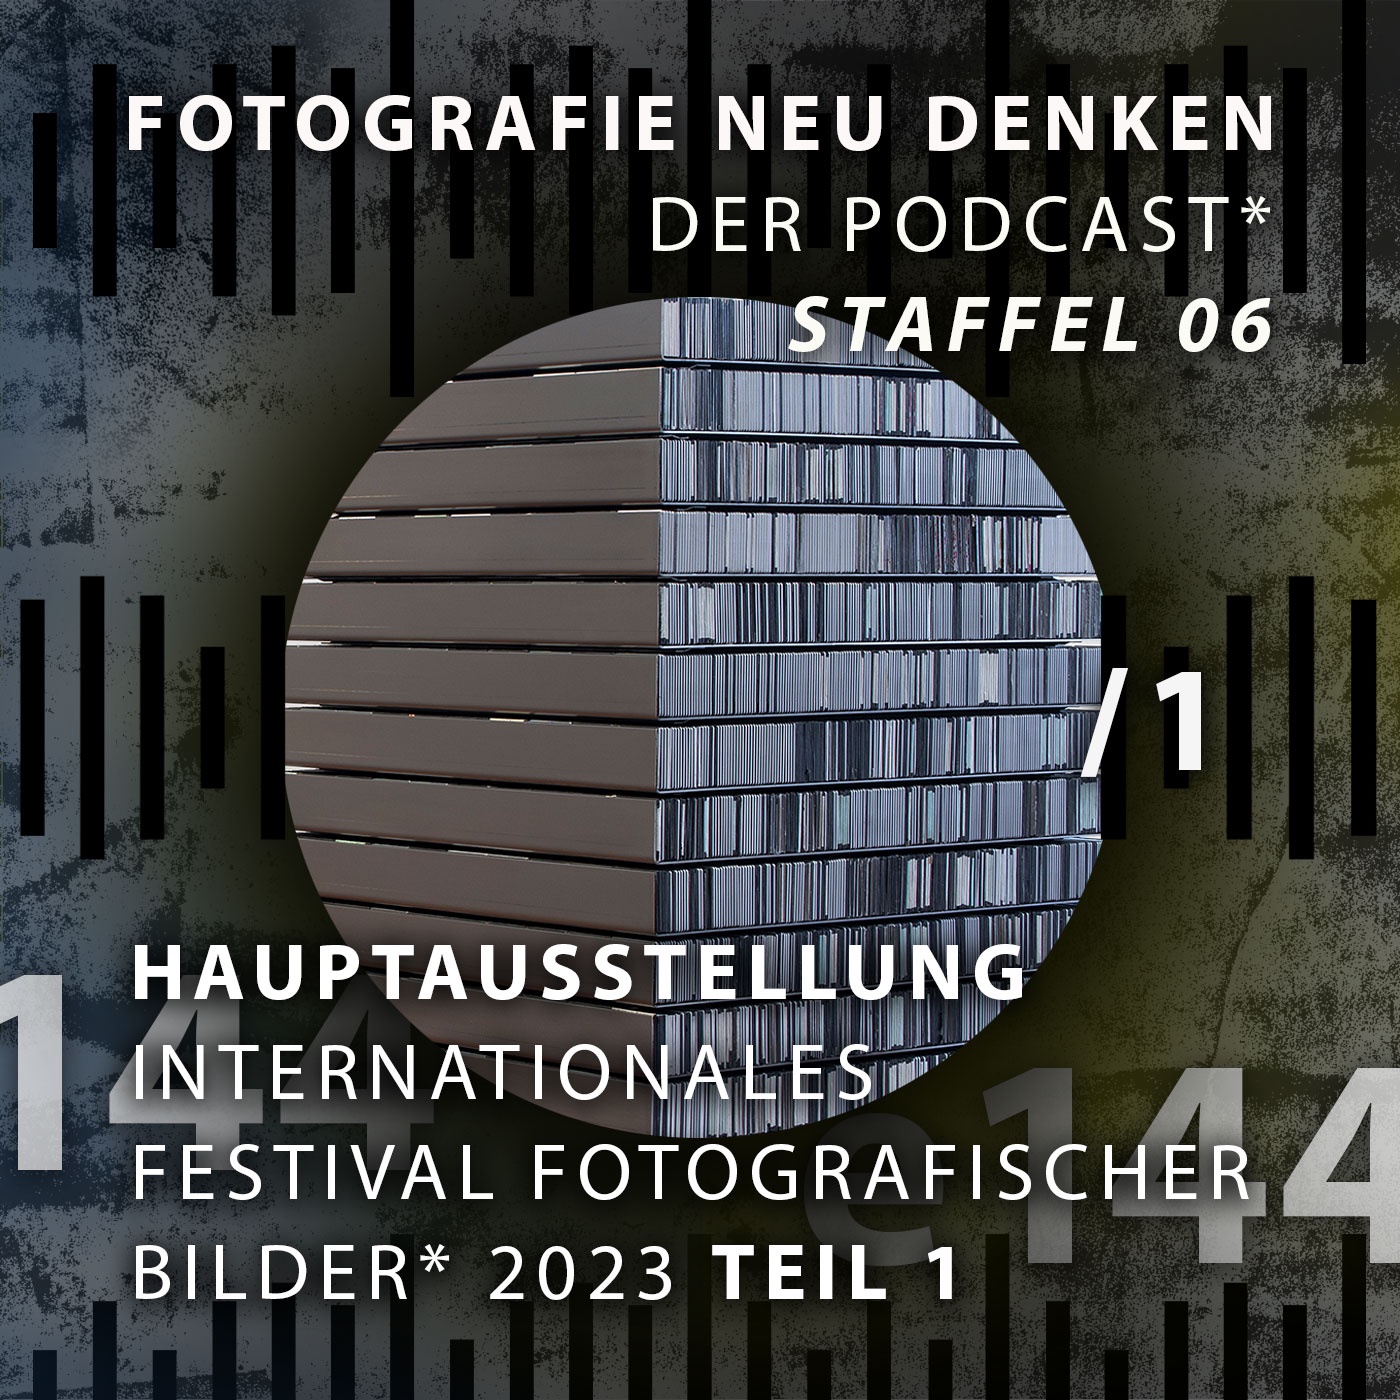 e144 »Hauptausstellung INTERNATIONALES FESTIVAL FOTOGRAFISCHER BILDER 2023 Teil 1.«